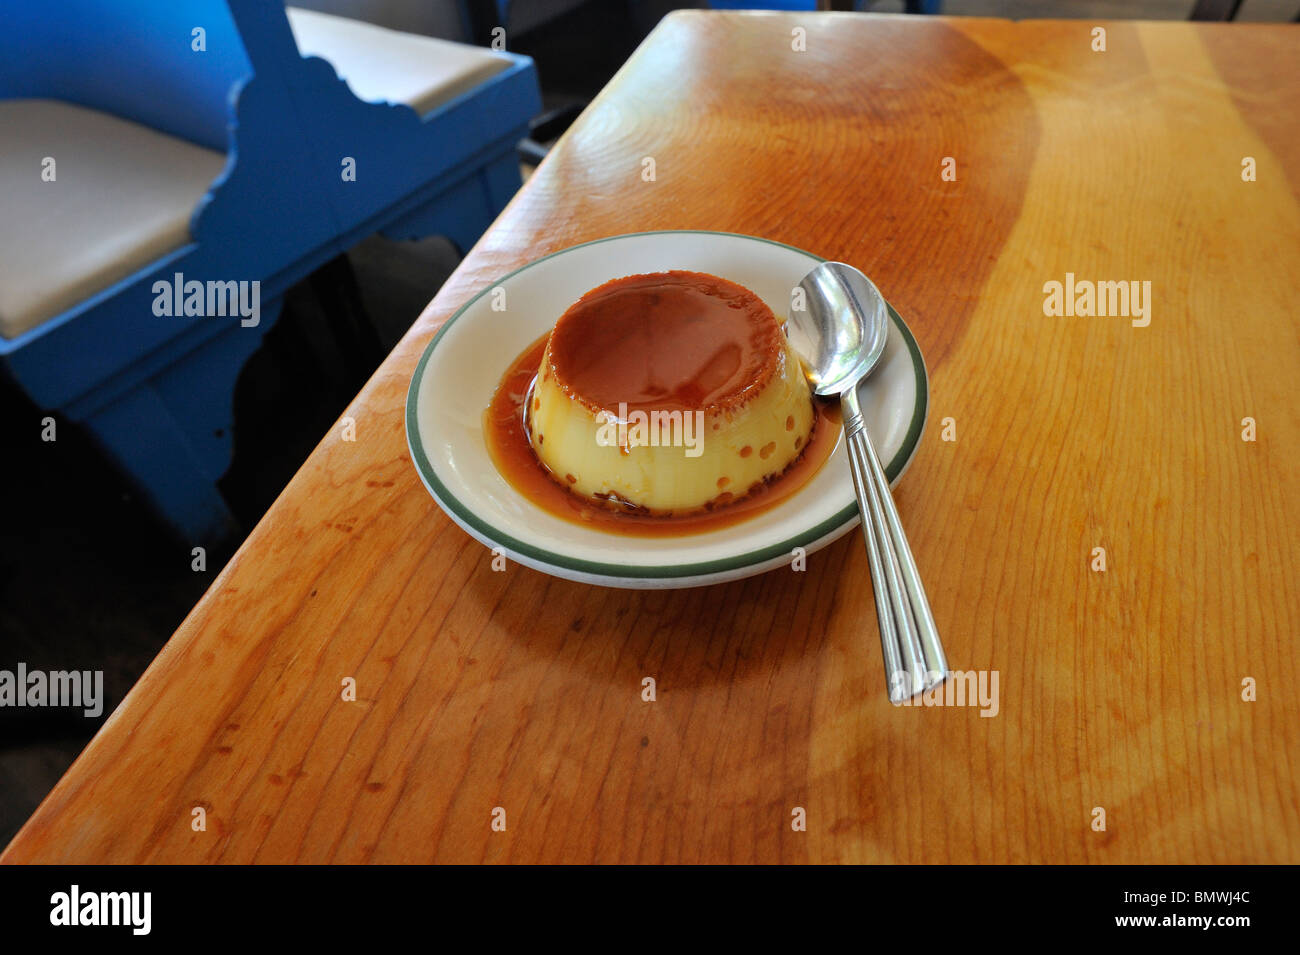 Une crème caramel flan ou sur une table en bois dans un restaurant Banque D'Images